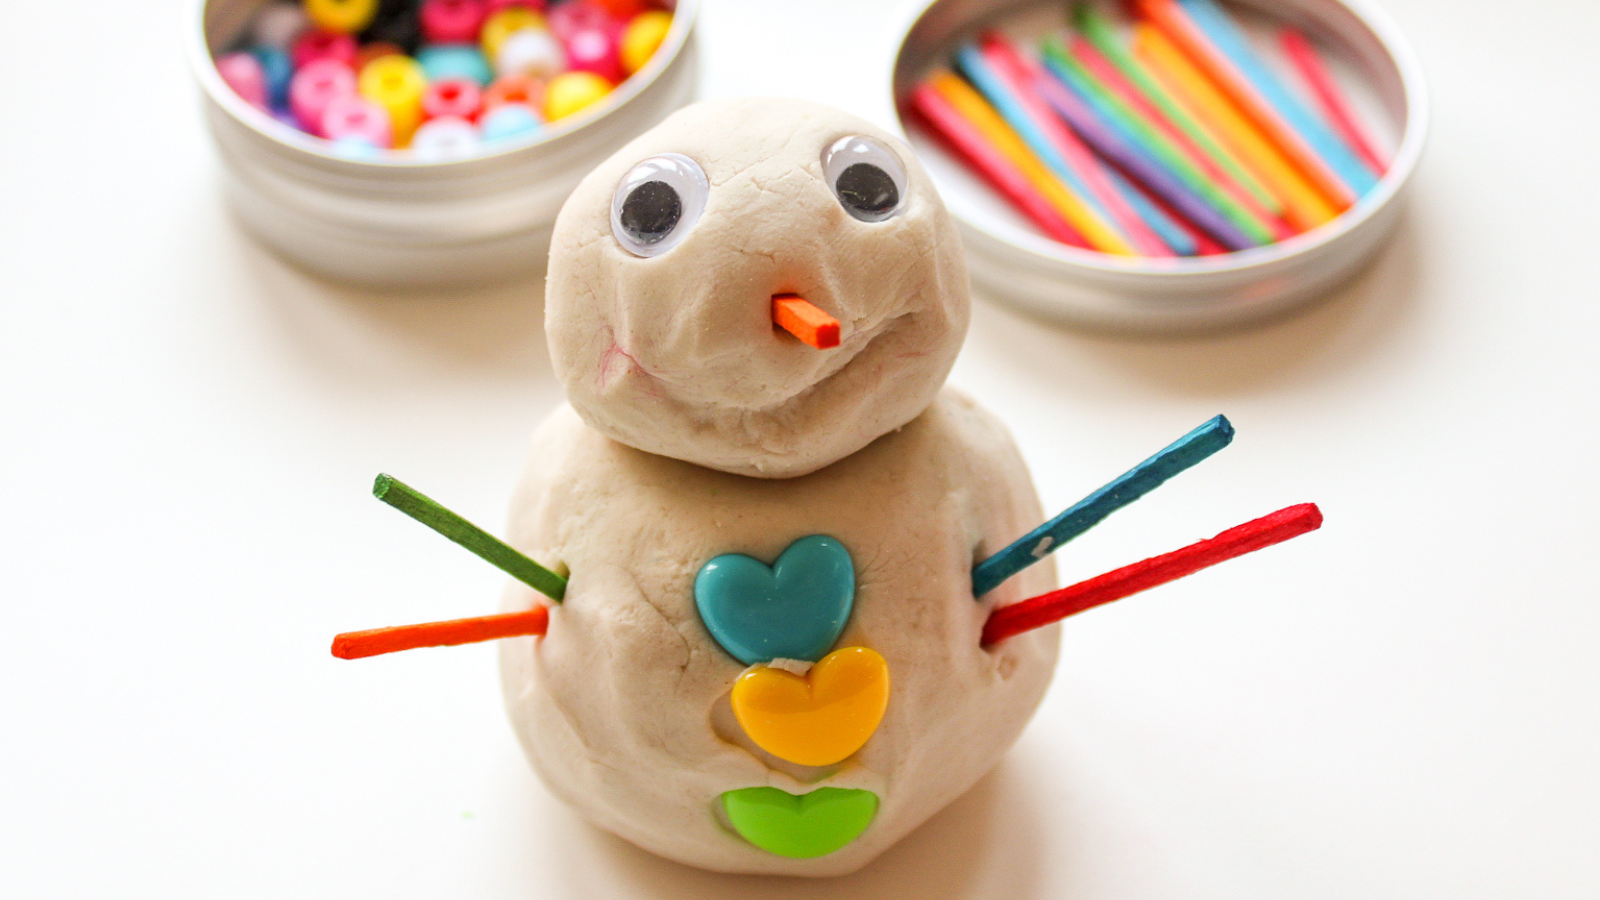 Playdough snowman